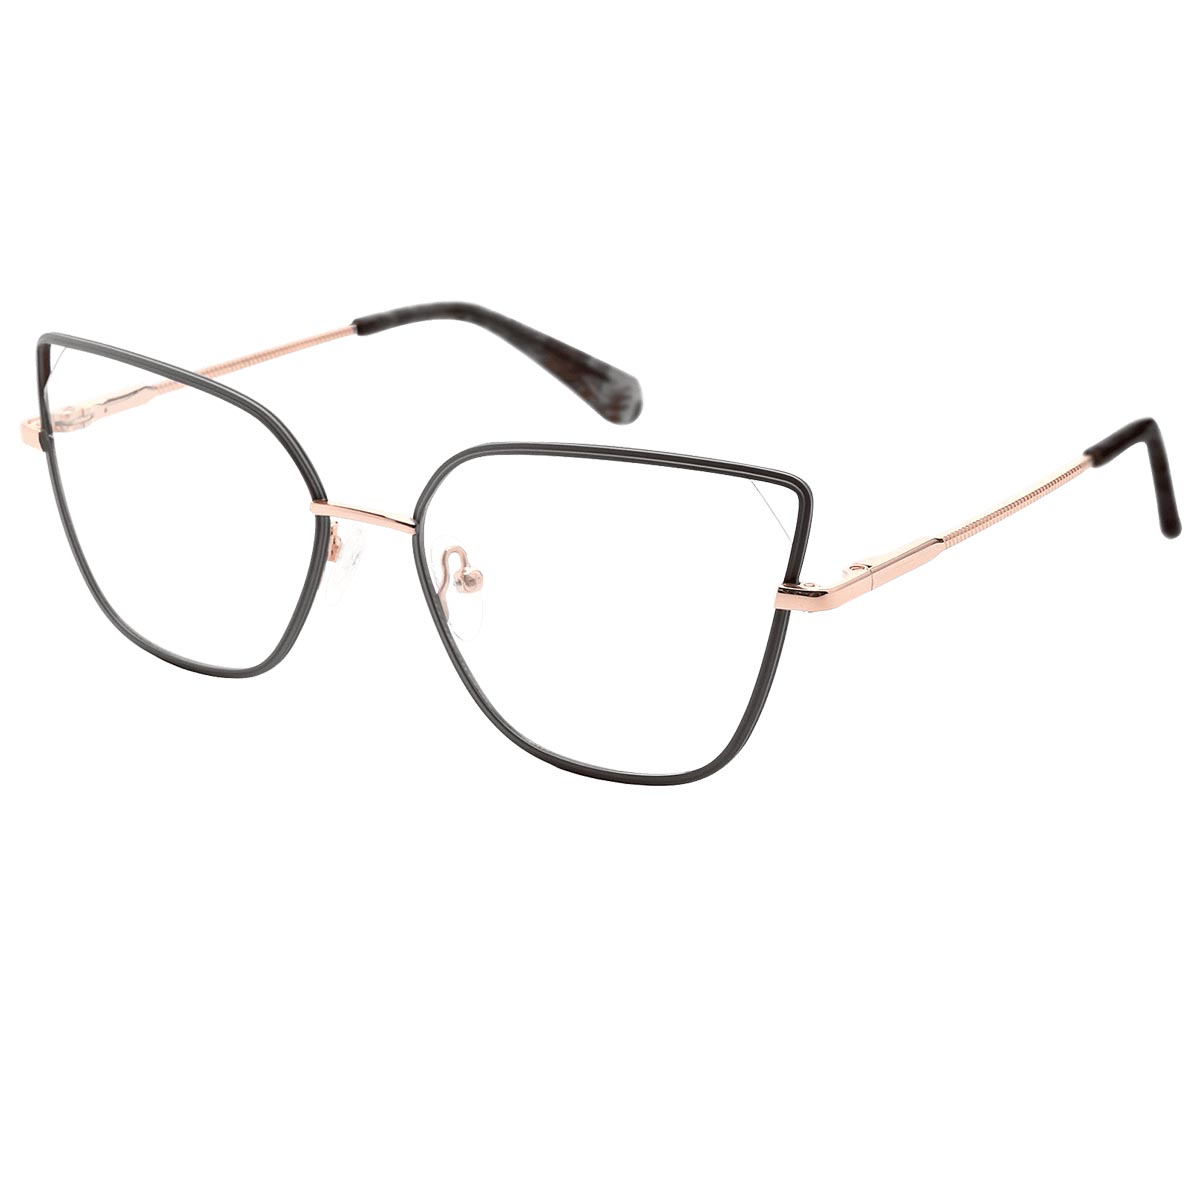 Hemera - Cat-eye Black Reading Glasses for Women